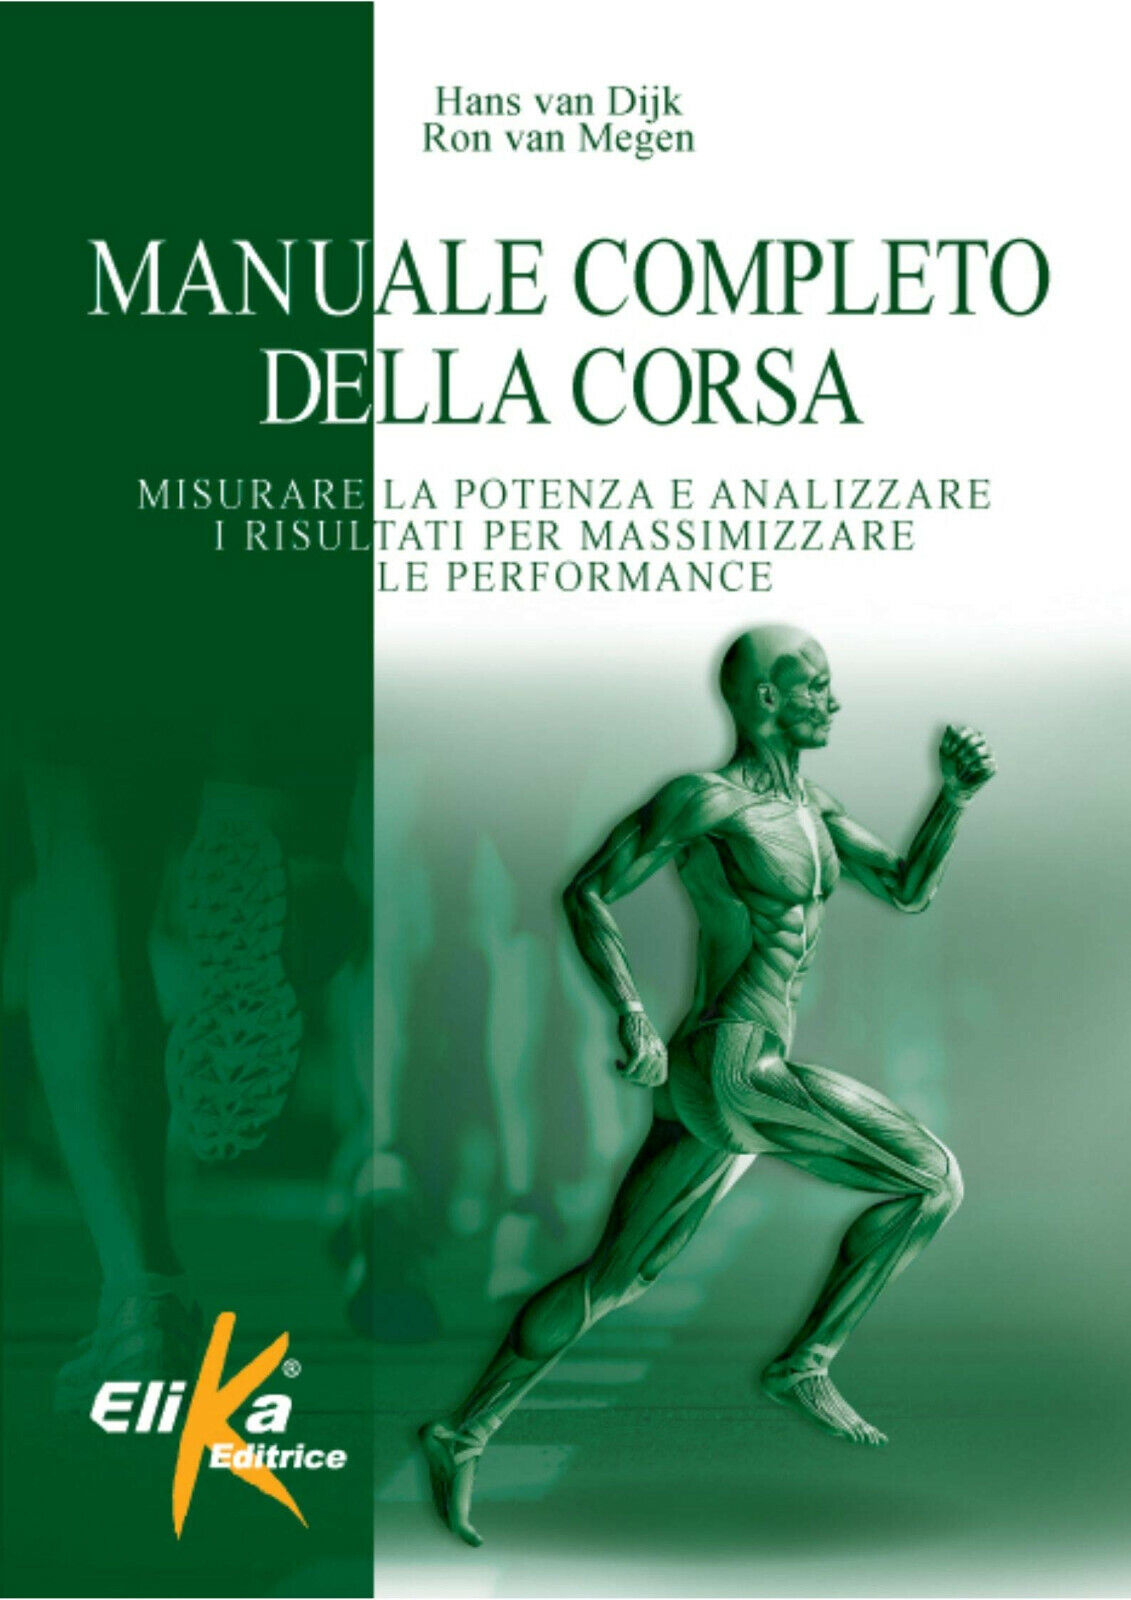 Manuale completo della corsa - Hans Van Dijk, Ron Van Megen - Elika, 2019 libro usato